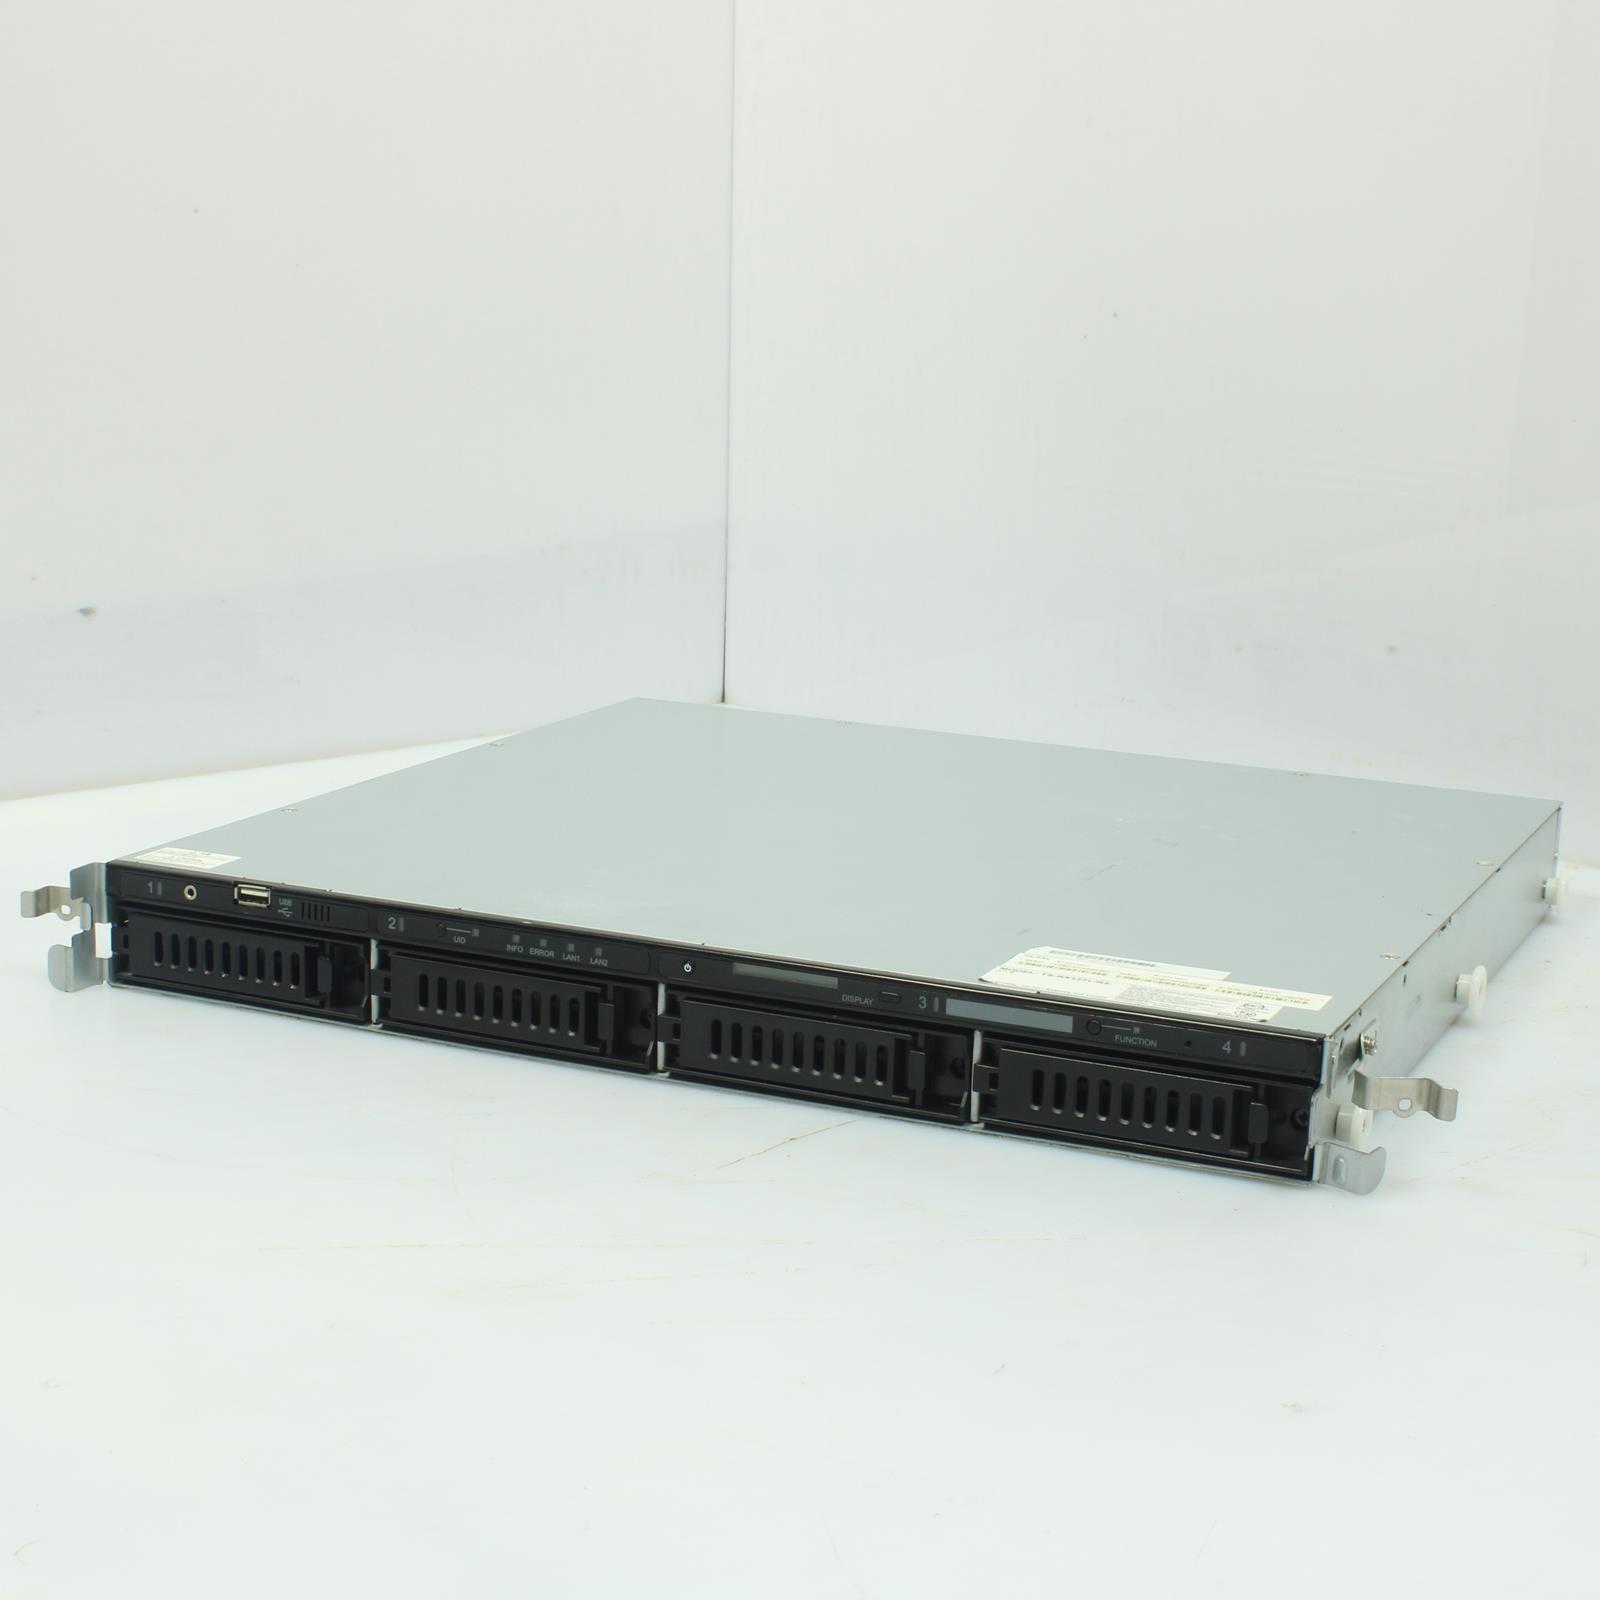 Buffalo TS-RX12TL/R5 TeraStation III 4-Bay 12TB HDD Network Storage Server